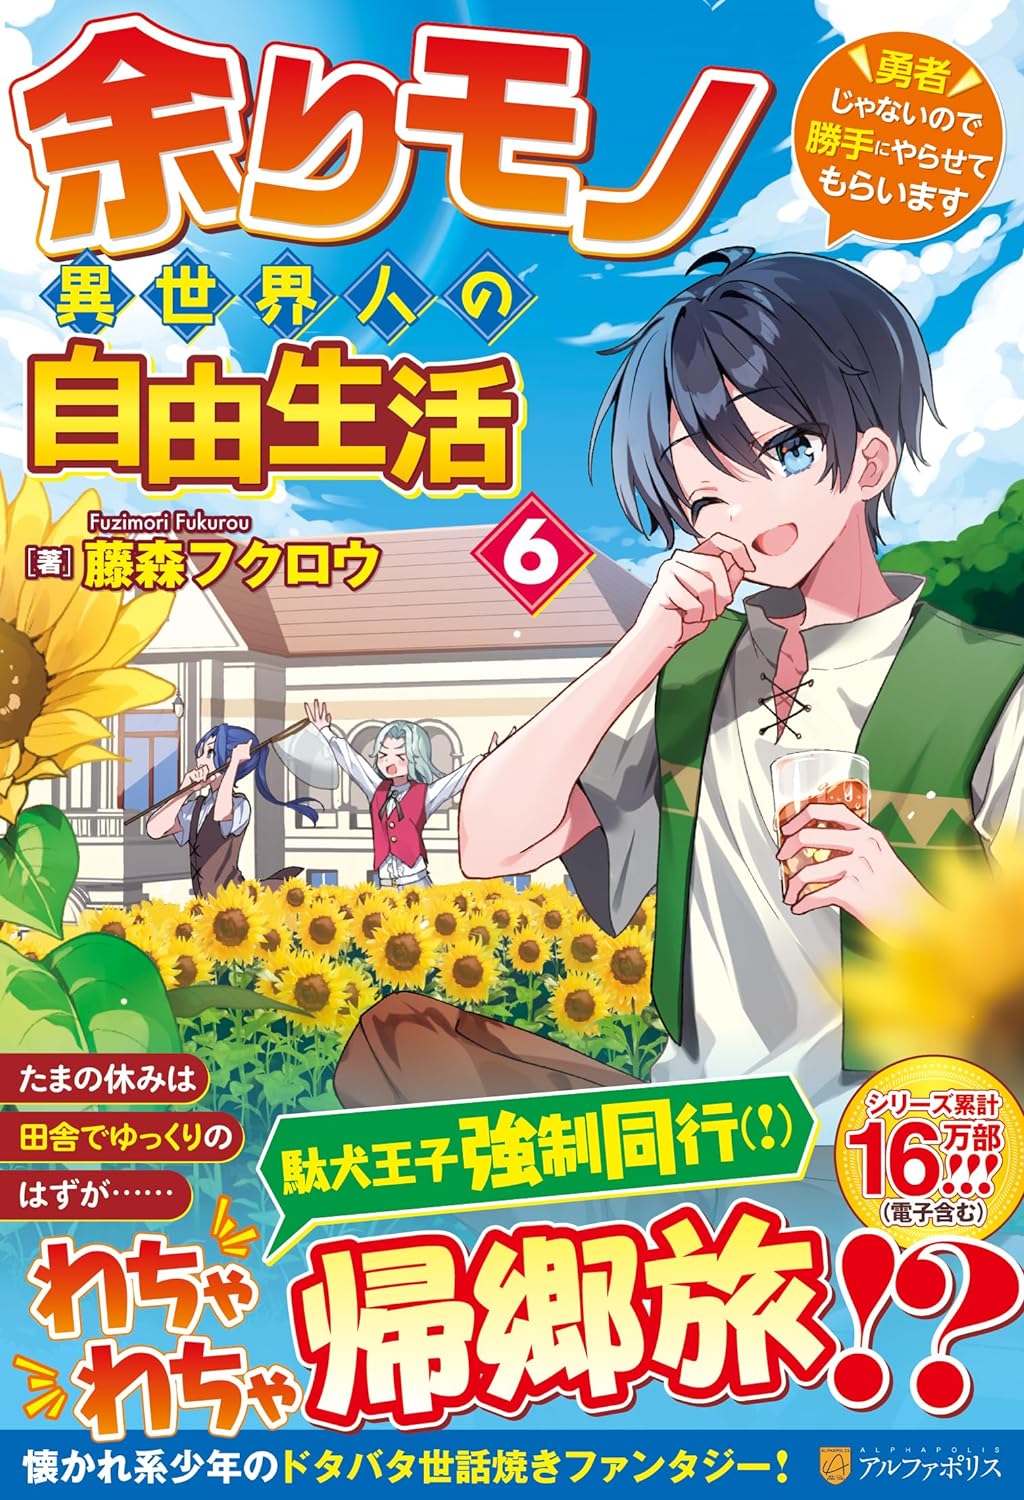 Novo volume de Youkoso Jitsuryoku – Light Novels mais vendidas (Fevereiro  22 - 28) - IntoxiAnime